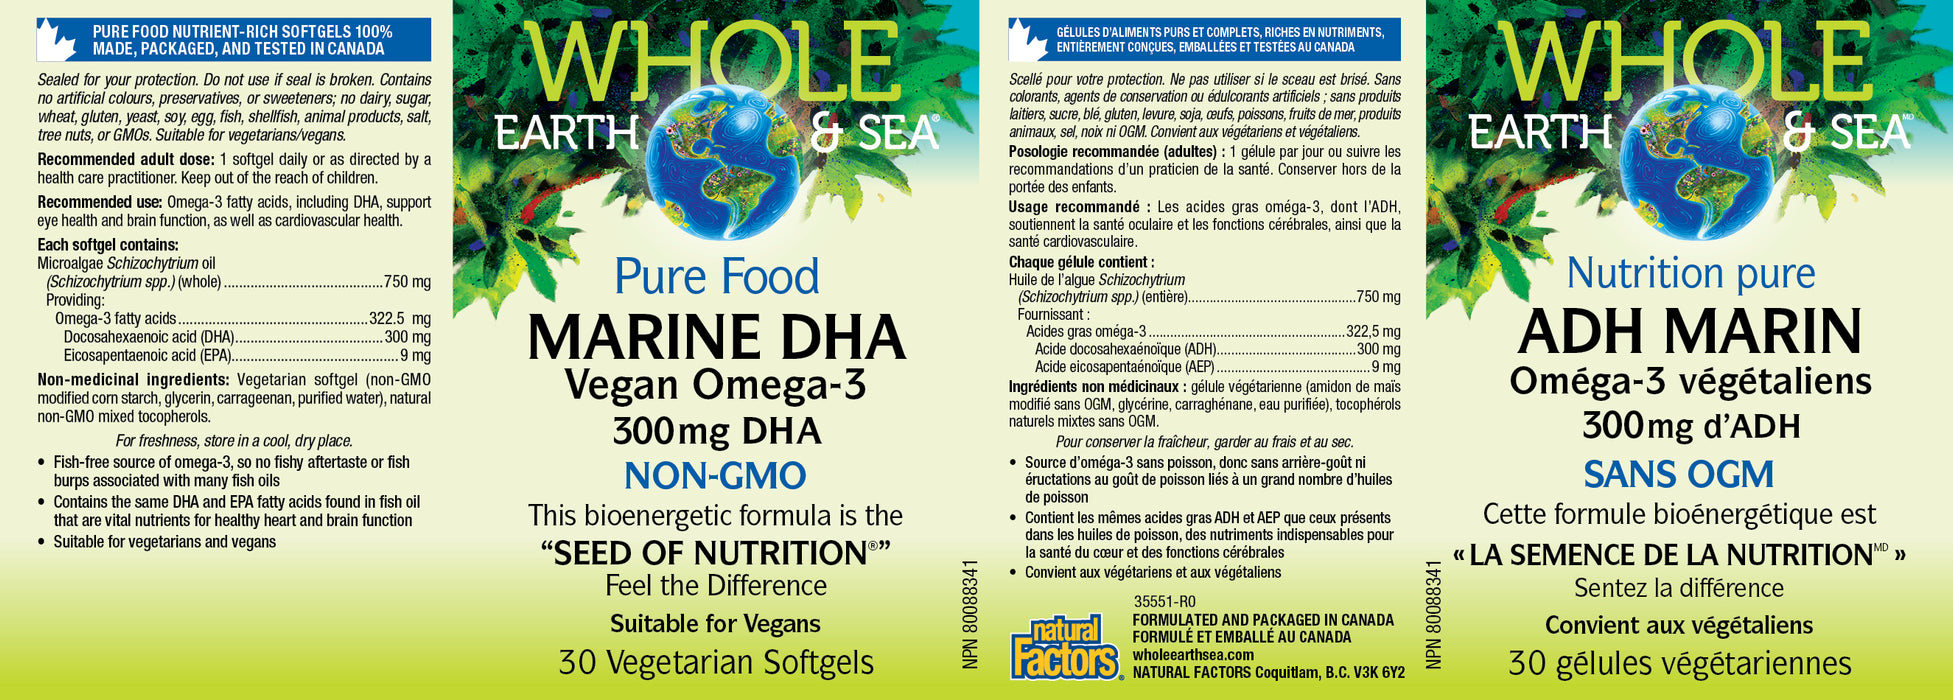 Whole Earth & Sea Marine DHA Vegan Omega-3 300mg DHA 30 Veg Softgels